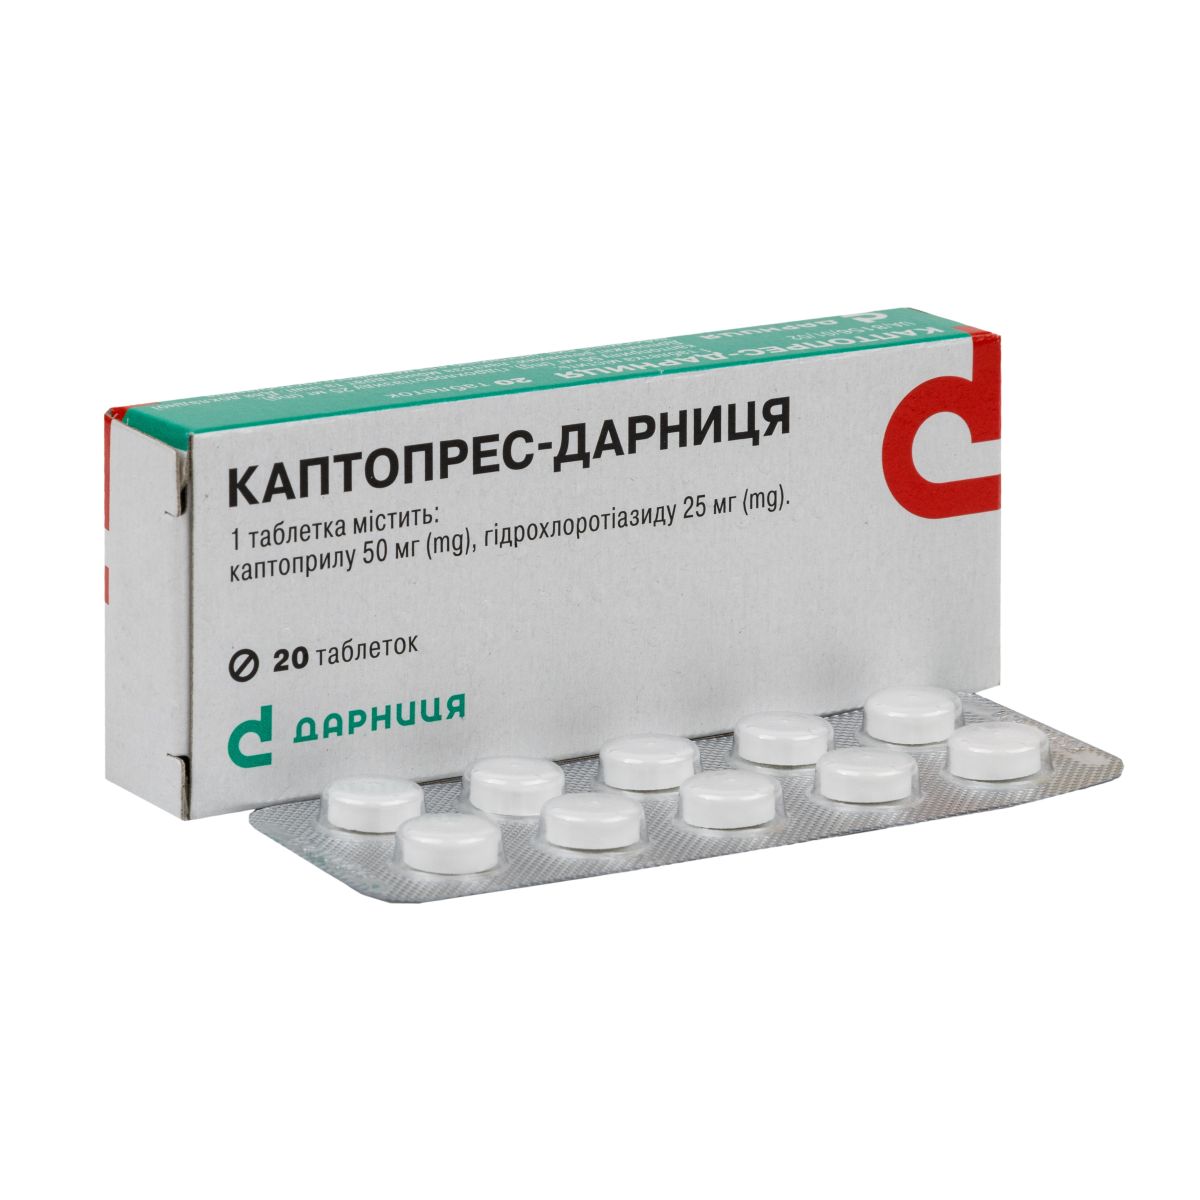 Инструкция Каптопрес-Дарница таблетки №20 - купить в Аптеке Низких Цен с  доставкой по Украине, цена, инструкция, аналоги, отзывы